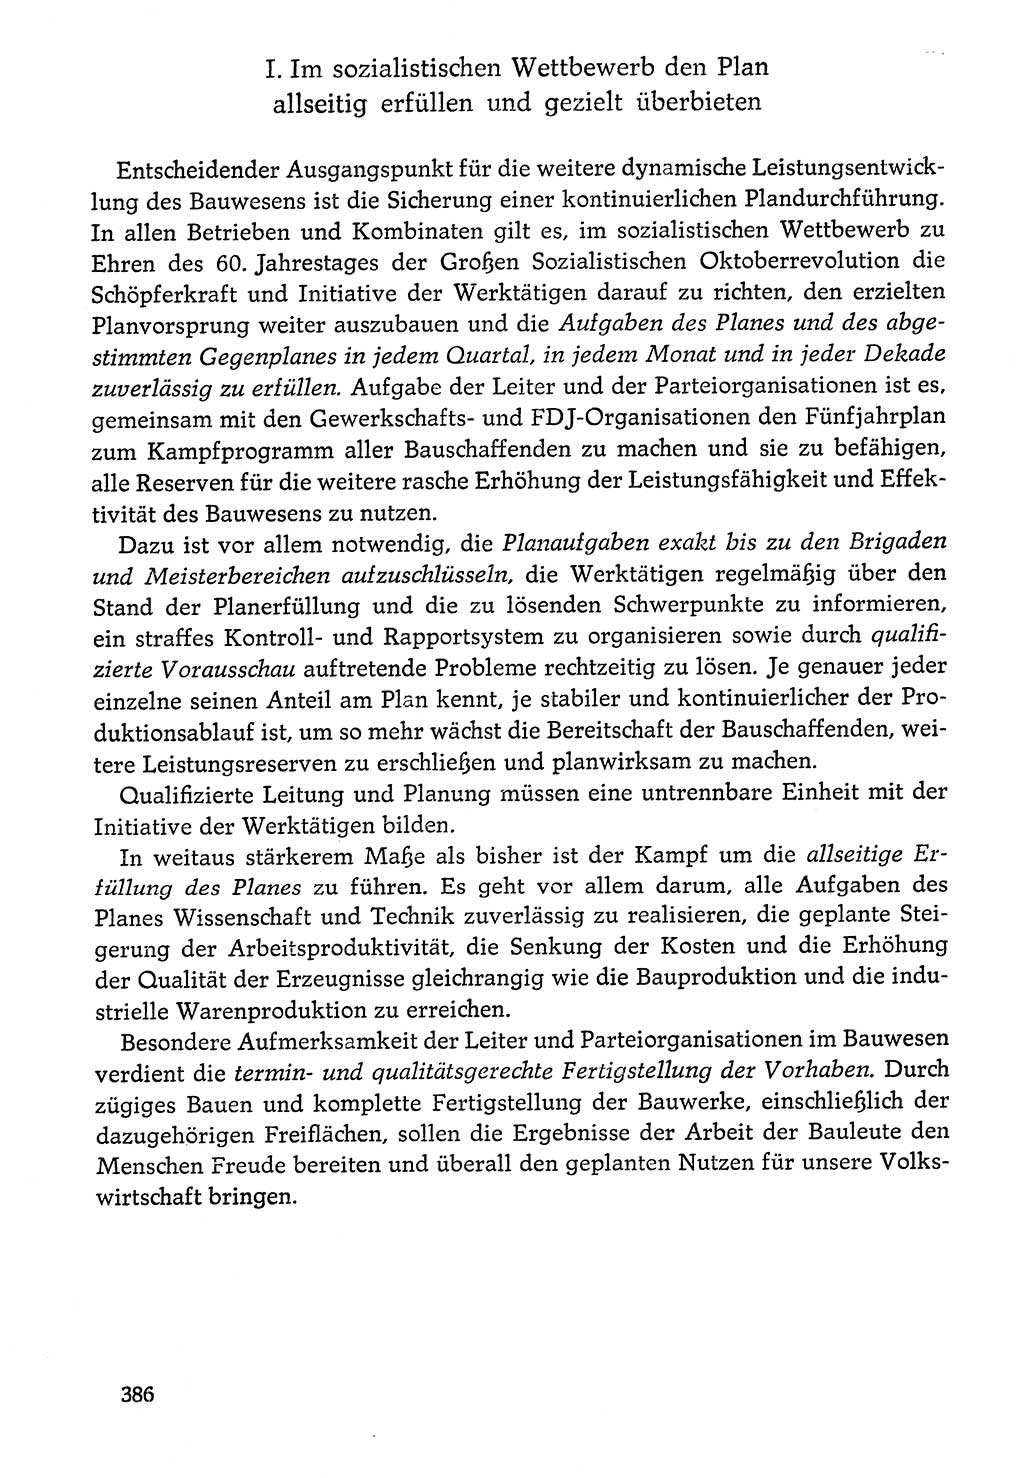 Dokumente der Sozialistischen Einheitspartei Deutschlands (SED) [Deutsche Demokratische Republik (DDR)] 1976-1977, Seite 386 (Dok. SED DDR 1976-1977, S. 386)